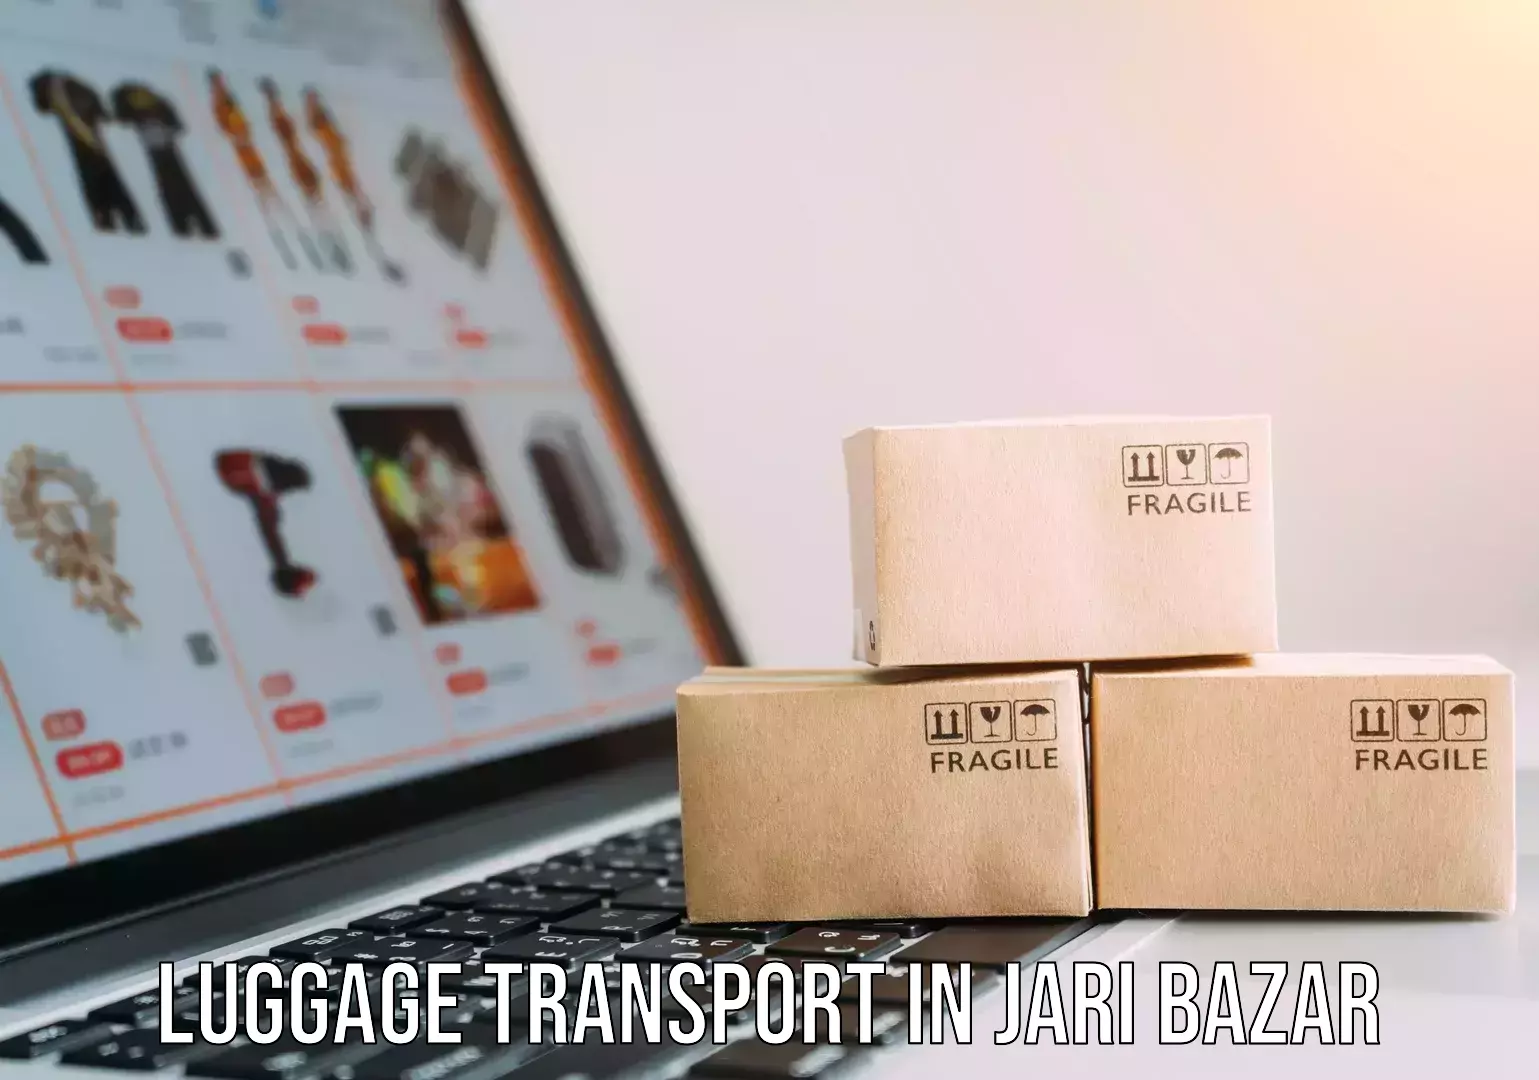 Baggage transport coordination in Jari Bazar